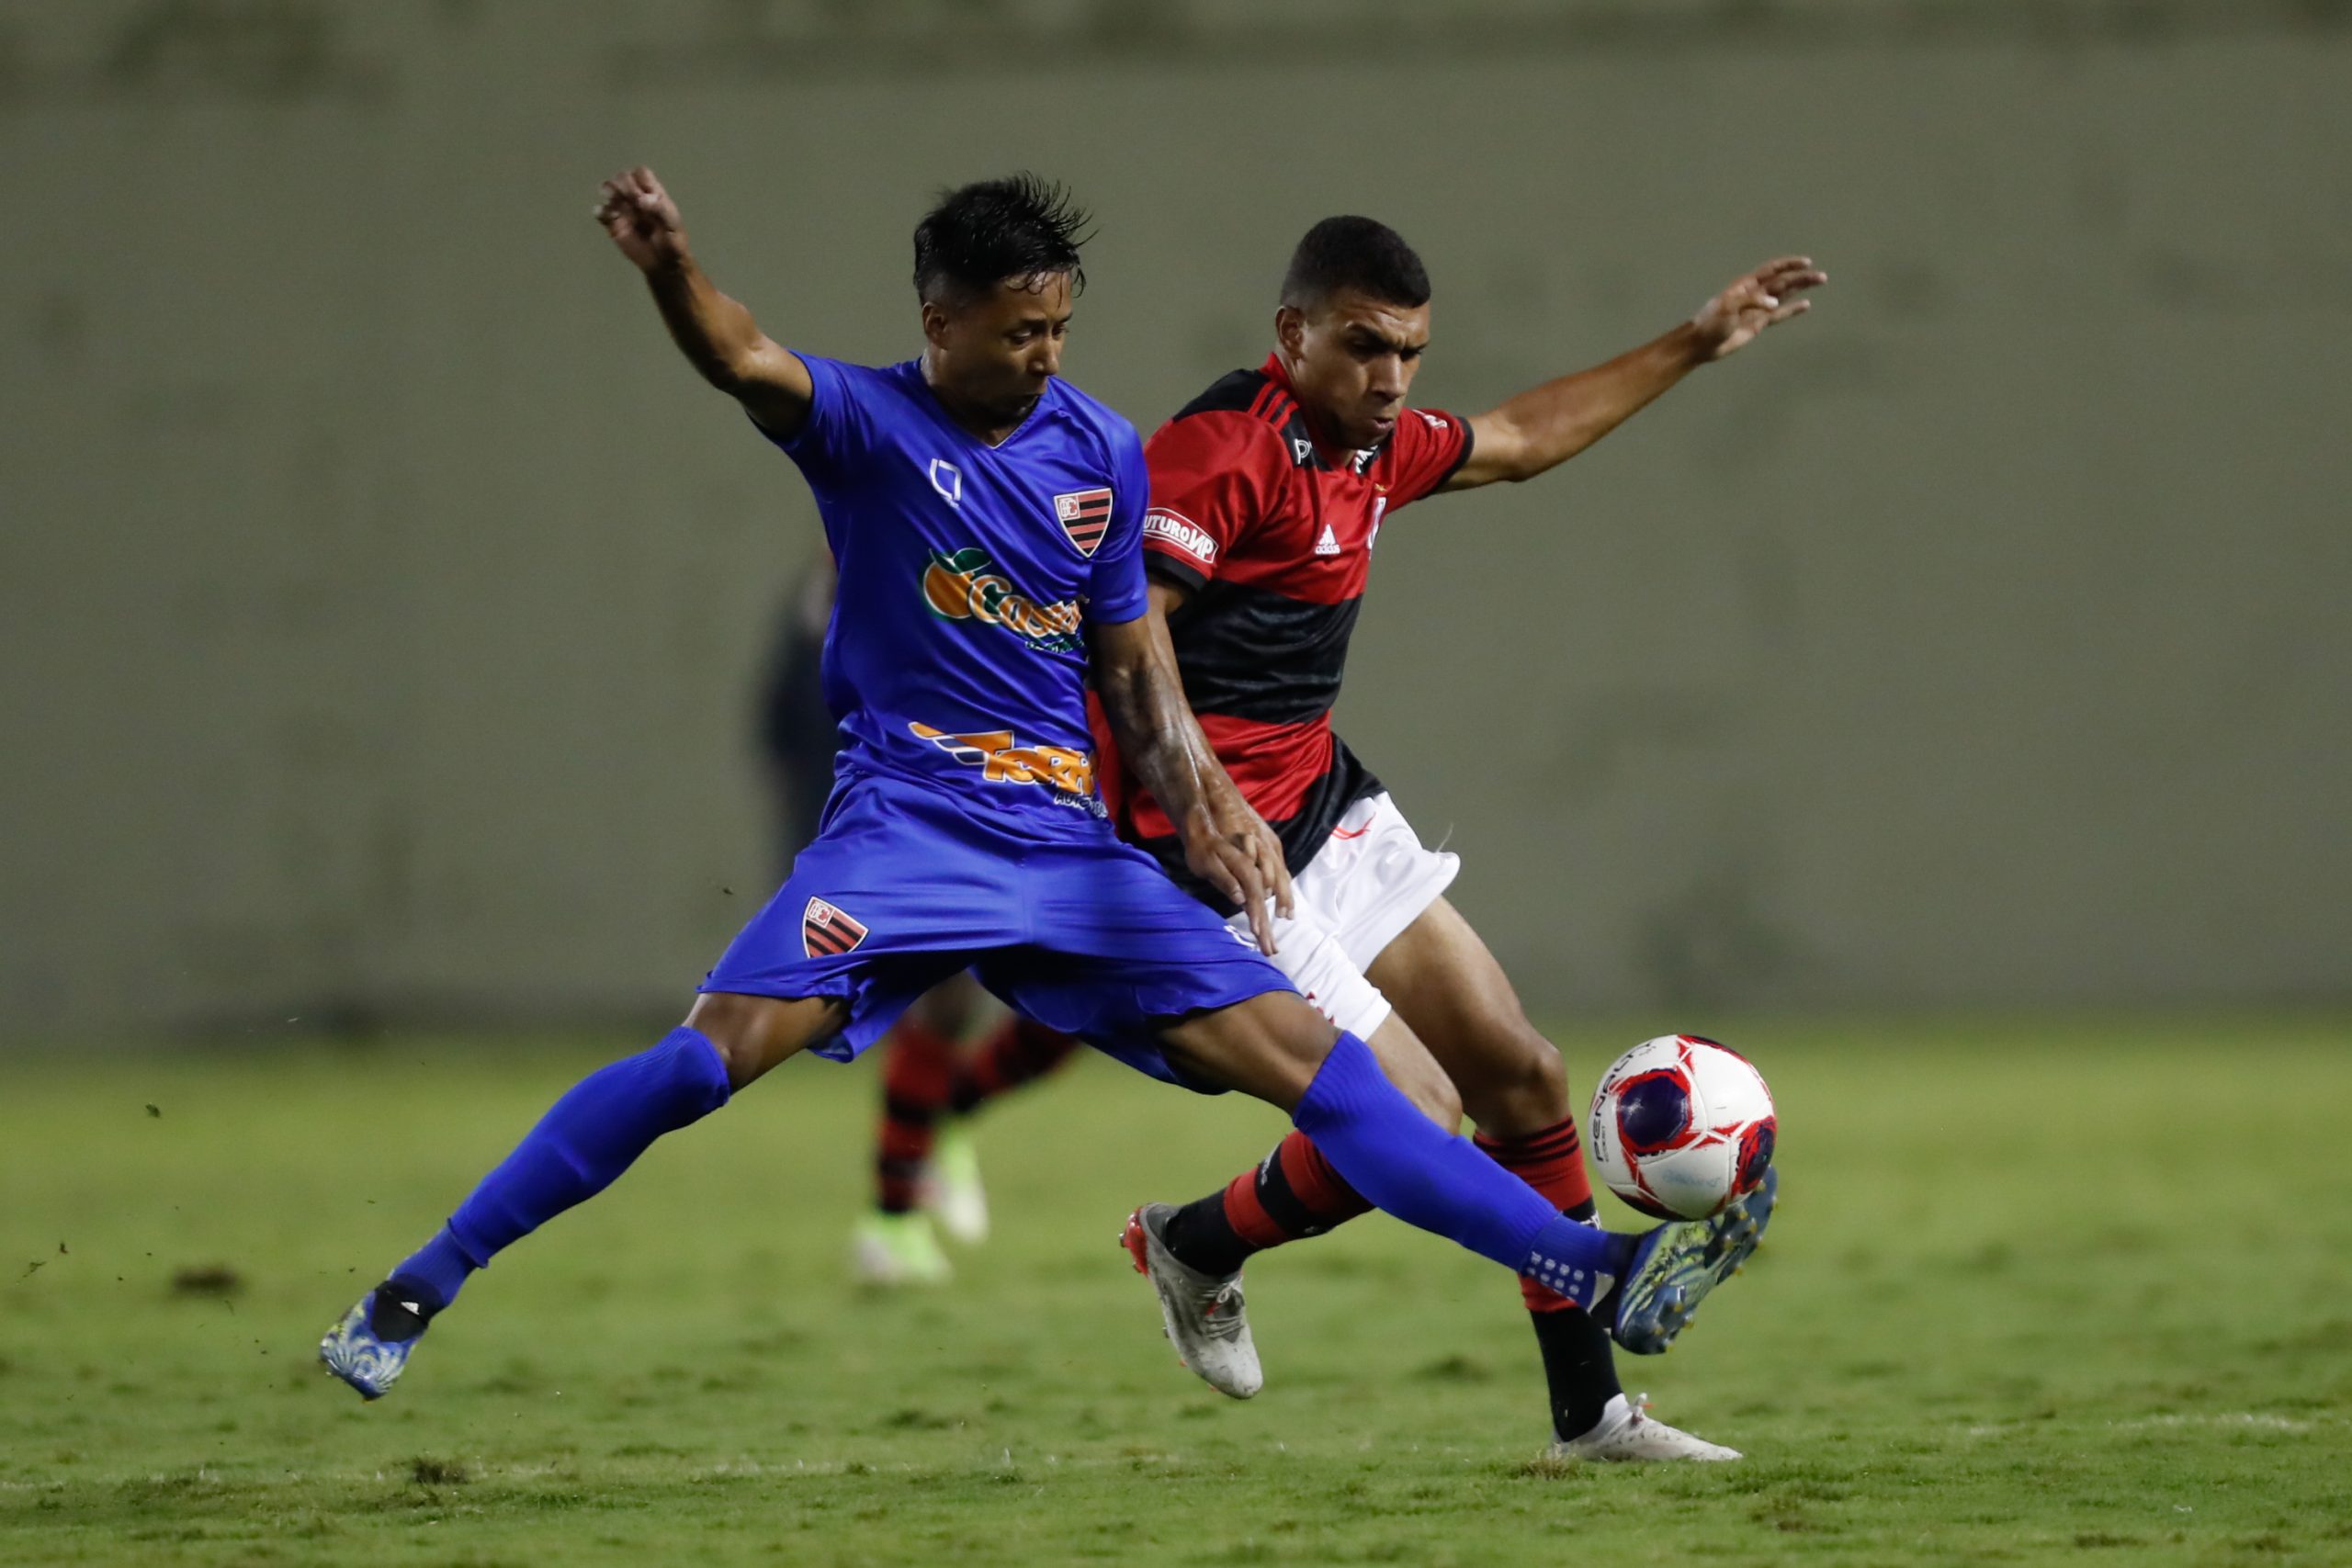 Em jogo único, Flamengo encara o Oeste pela terceira fase da Copinha